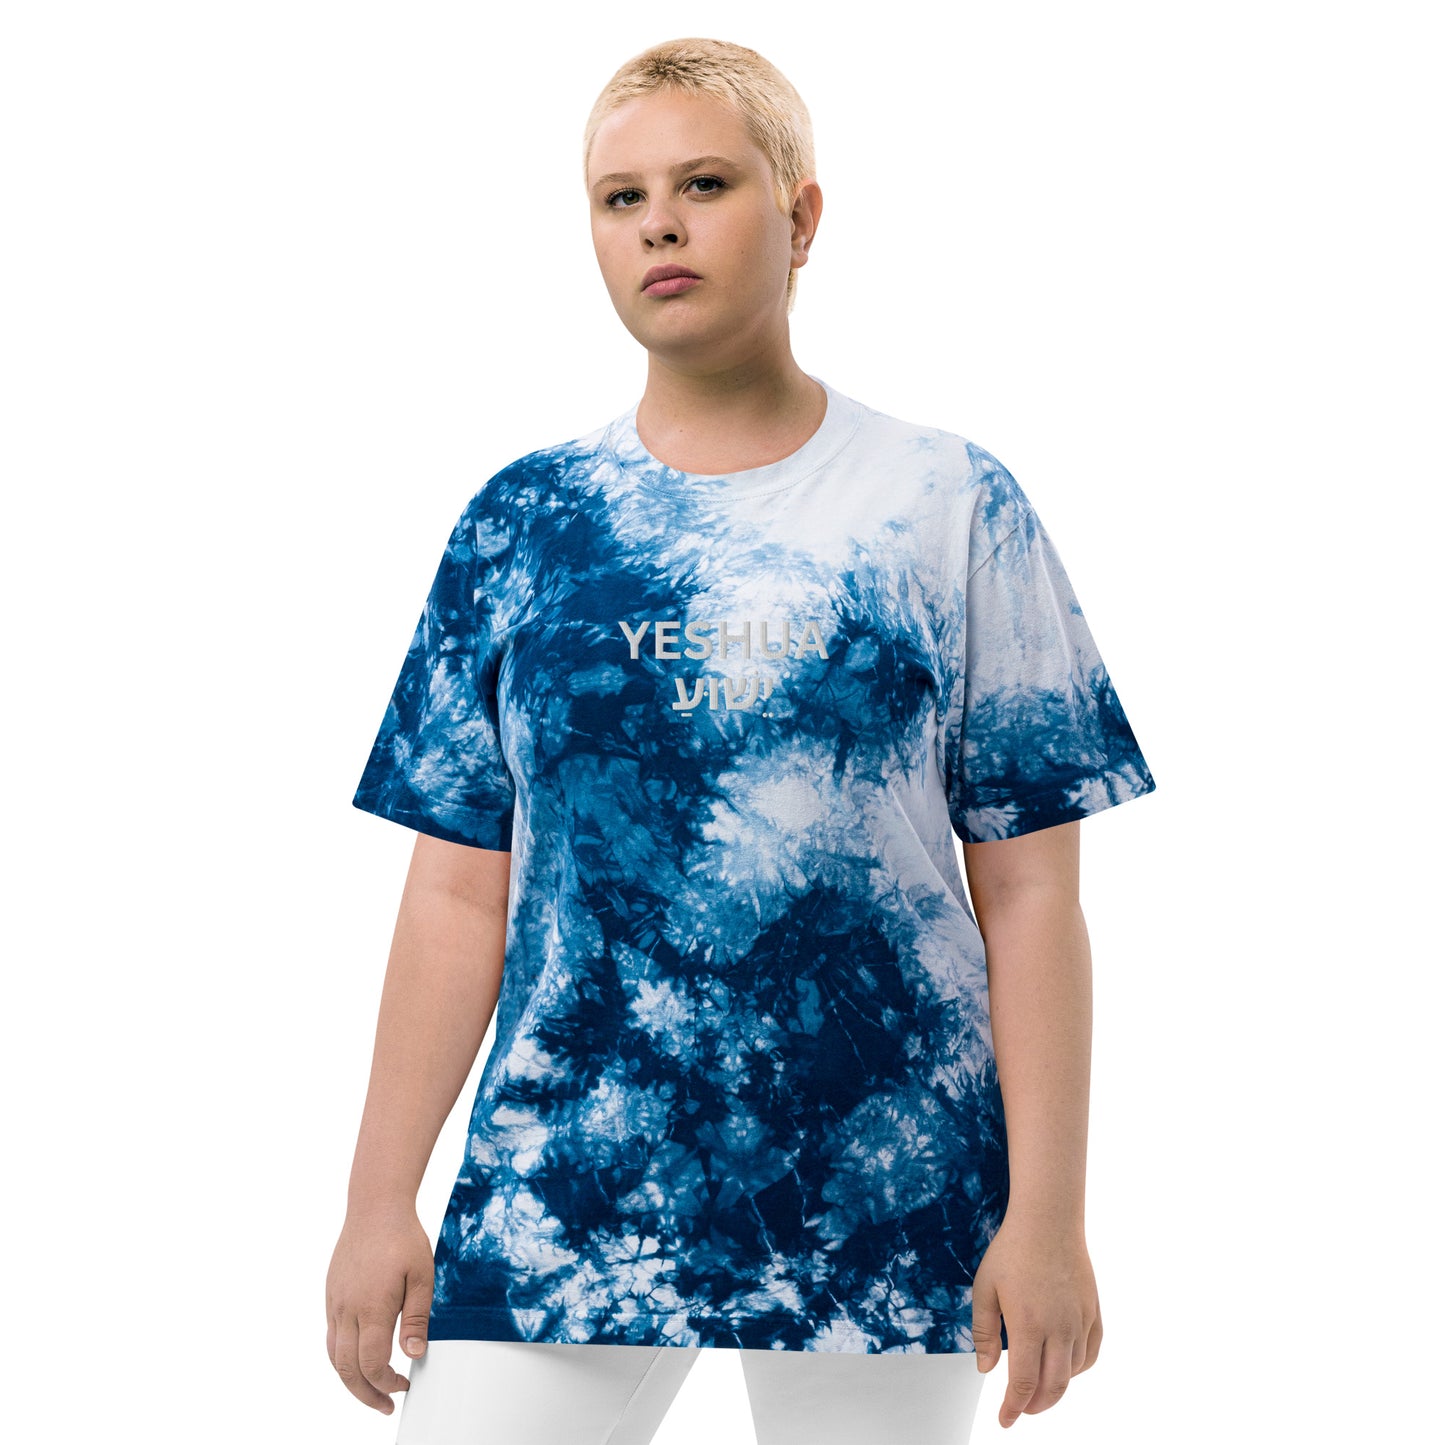 Oversized Embroidered "Yeshua" Tie-Dye T-Shirt (Unisex) - Humble & Faithful Co.